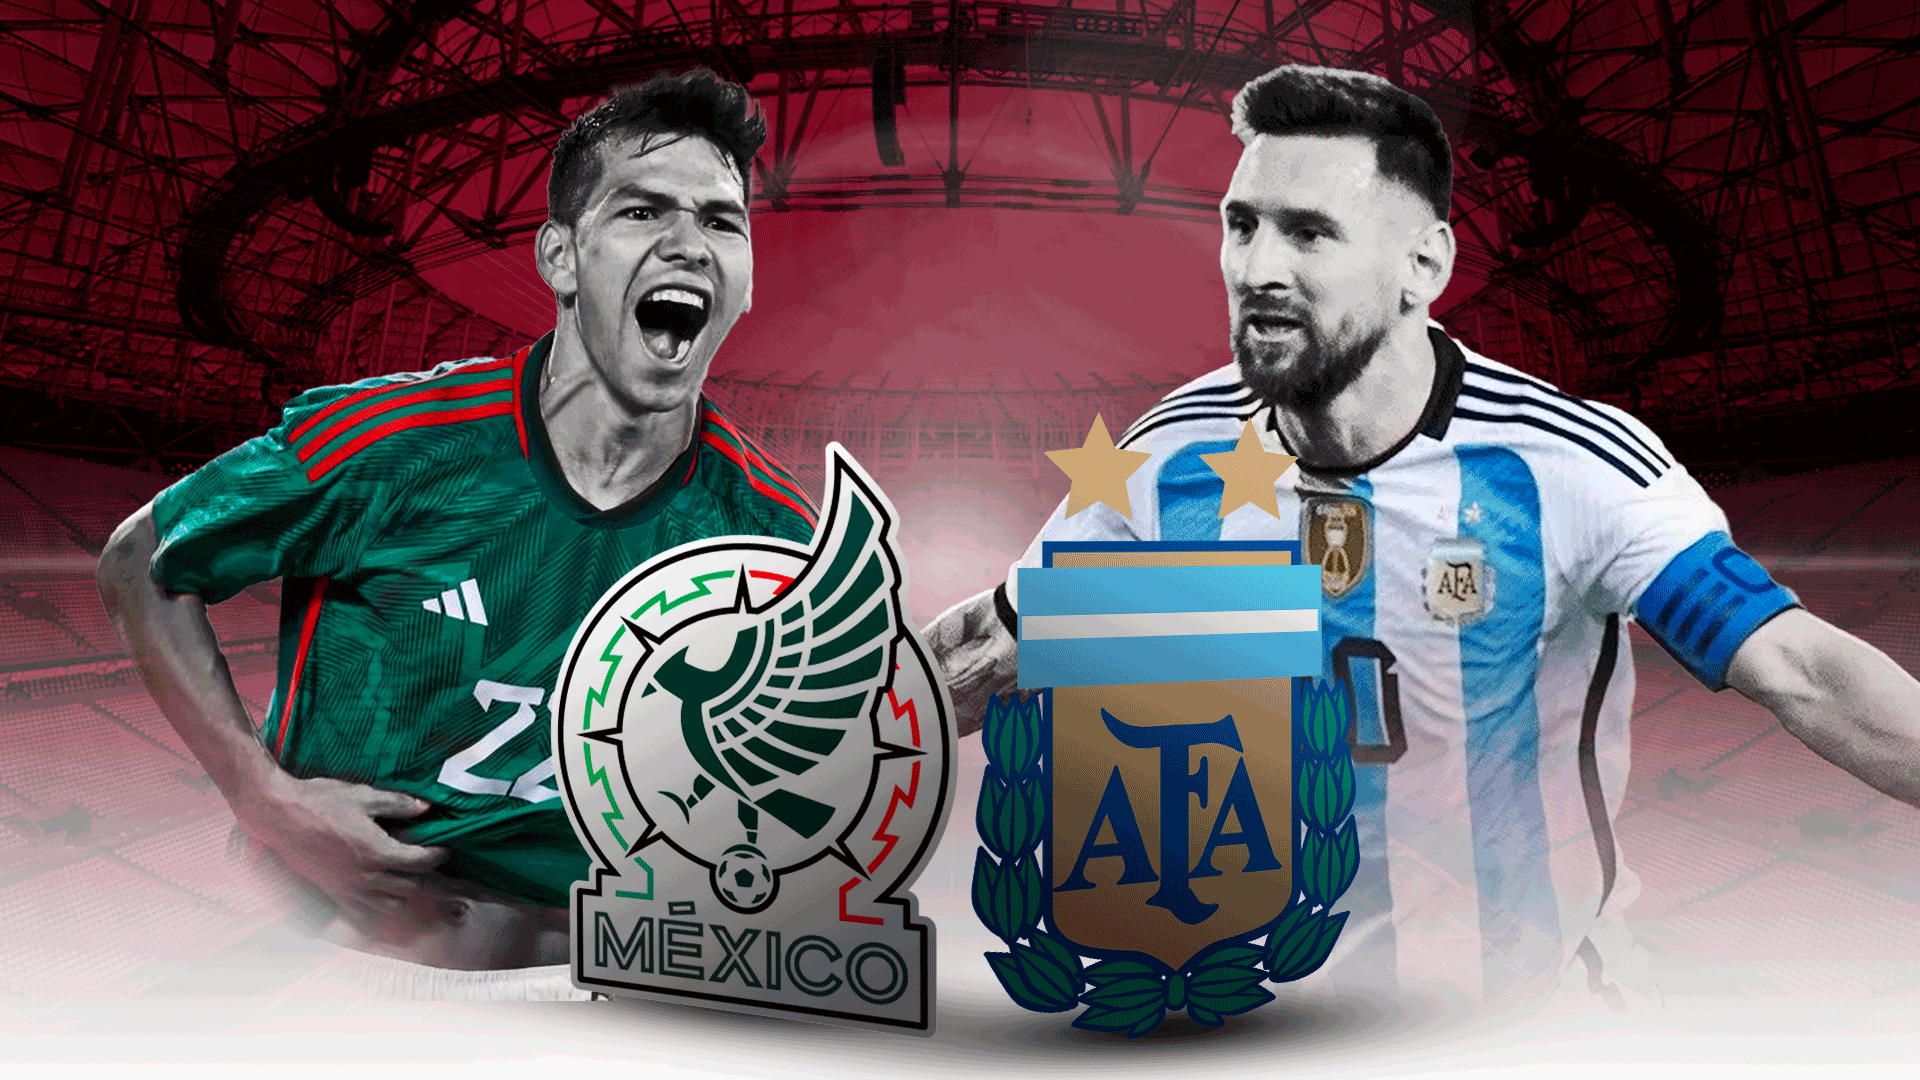 La previa de Argentina - México se vive por Showsport